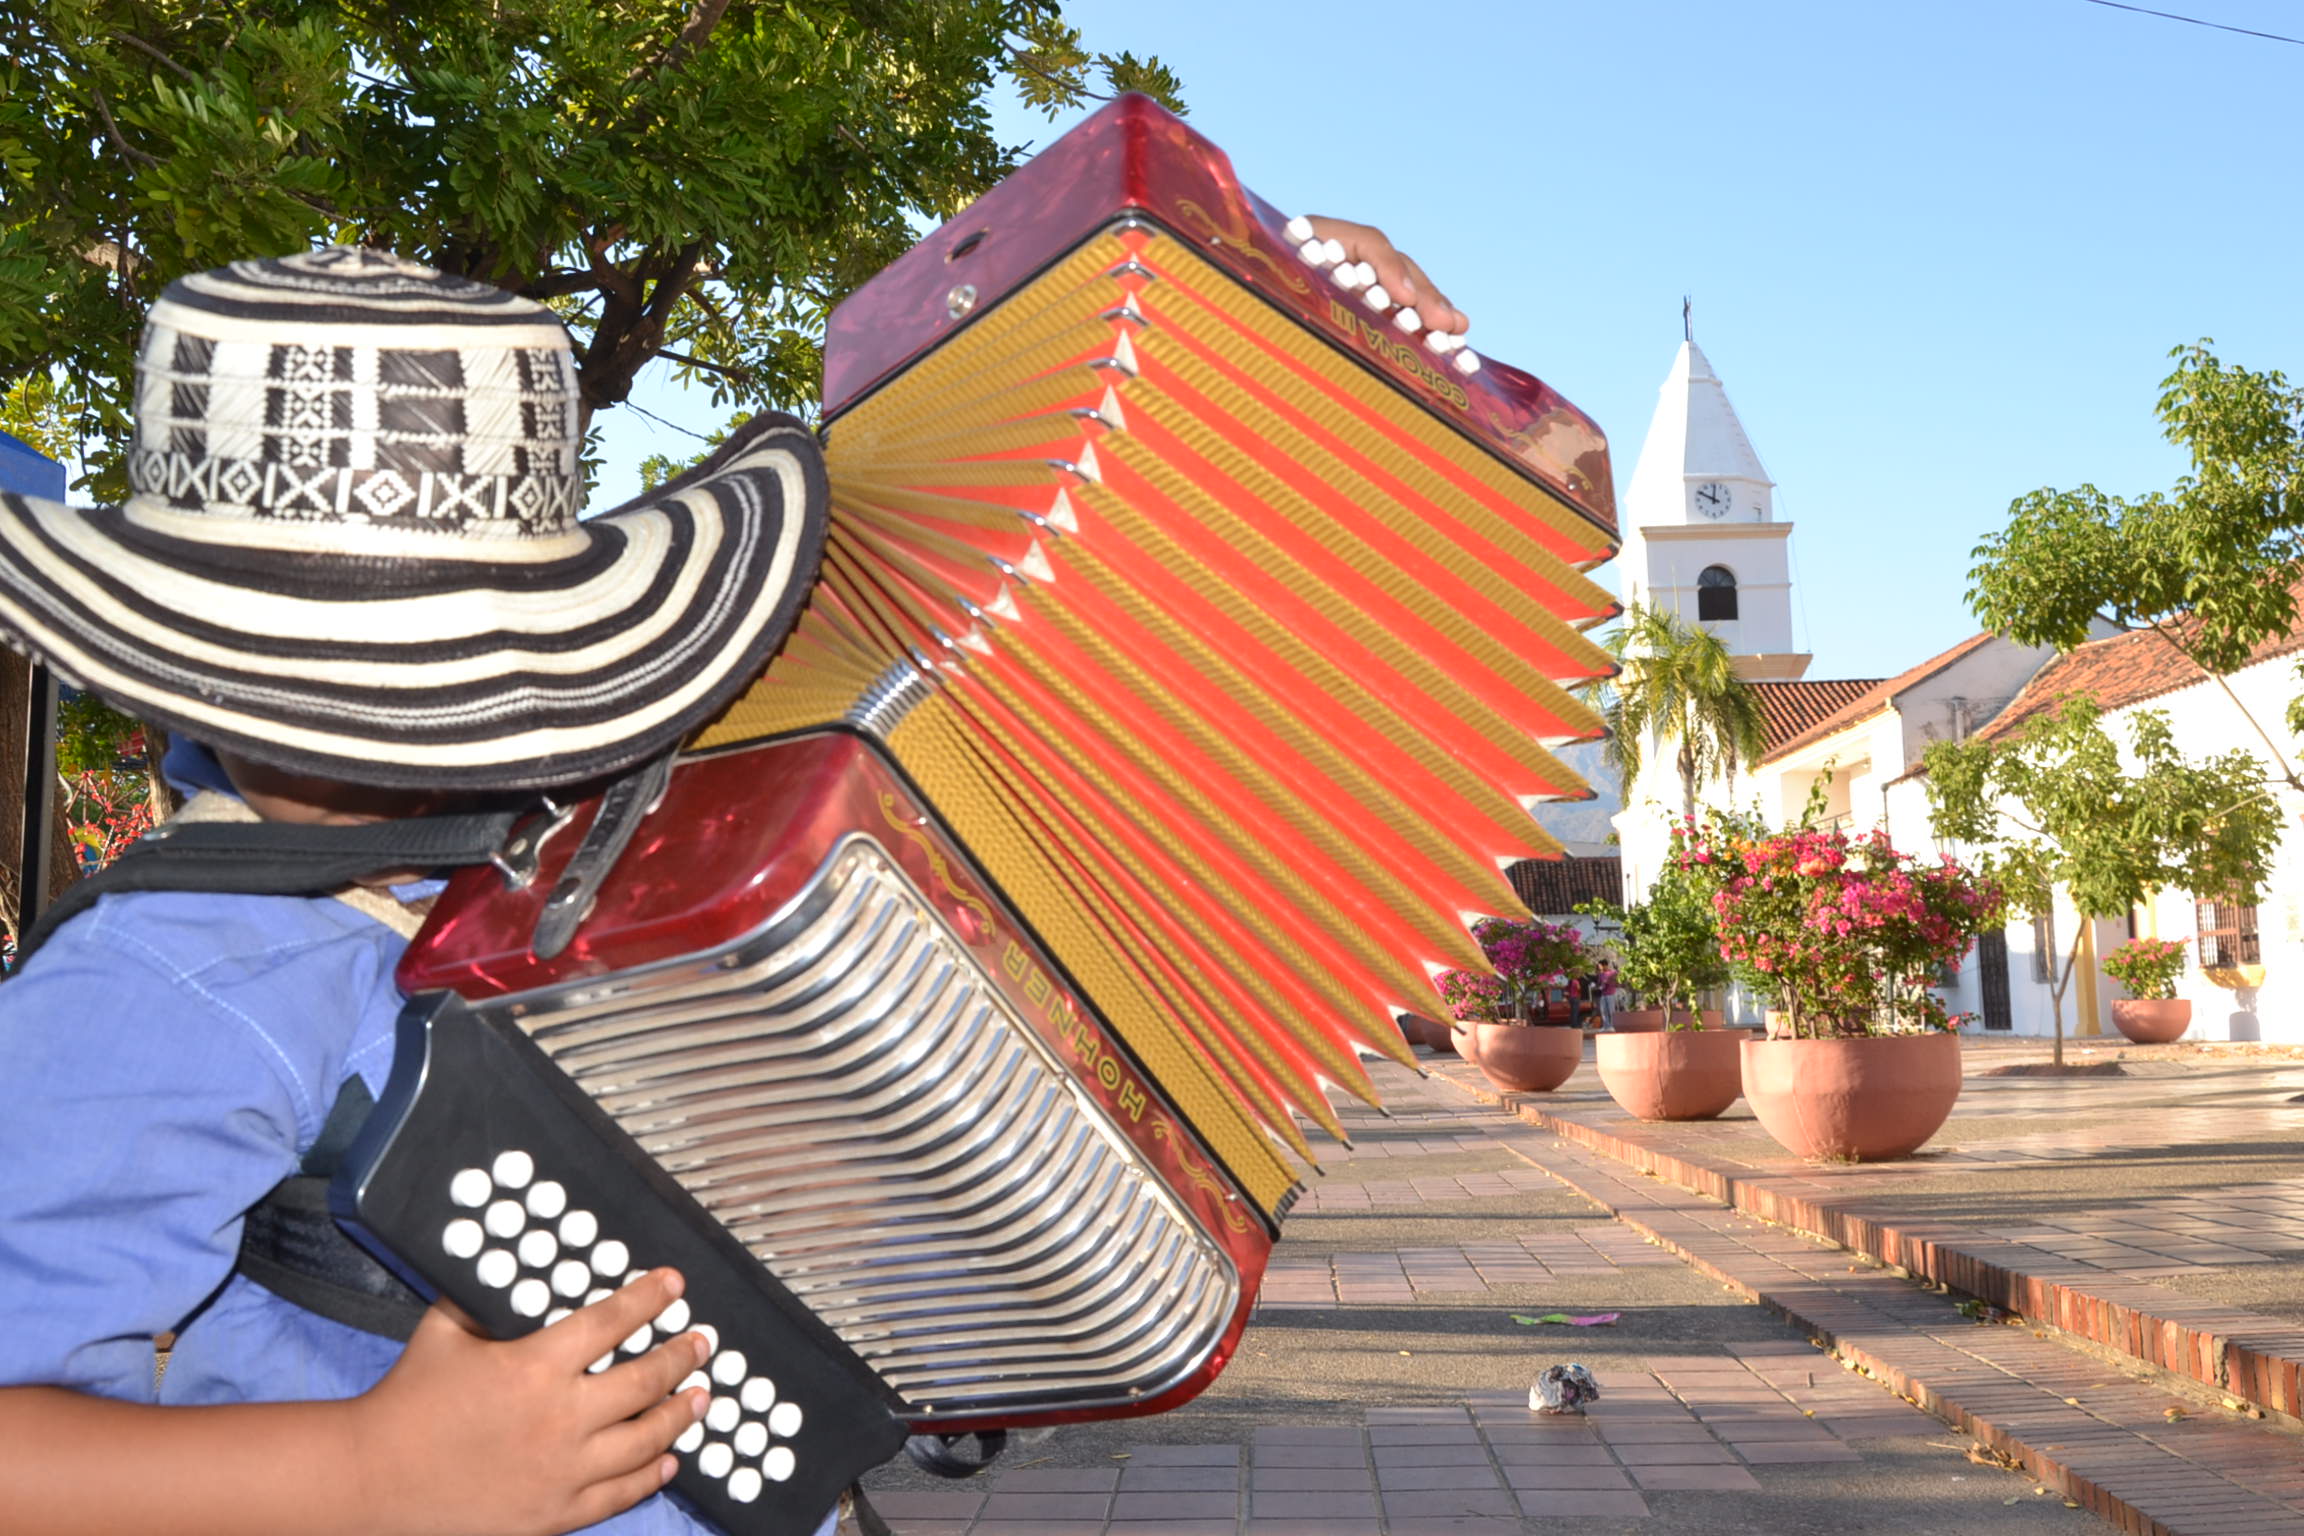 El festival será inaugurado oficialmente por el presidente Juan Manuel Santos. En el evento competirán 298 acordeoneros, entre ellos 13 mujeres.